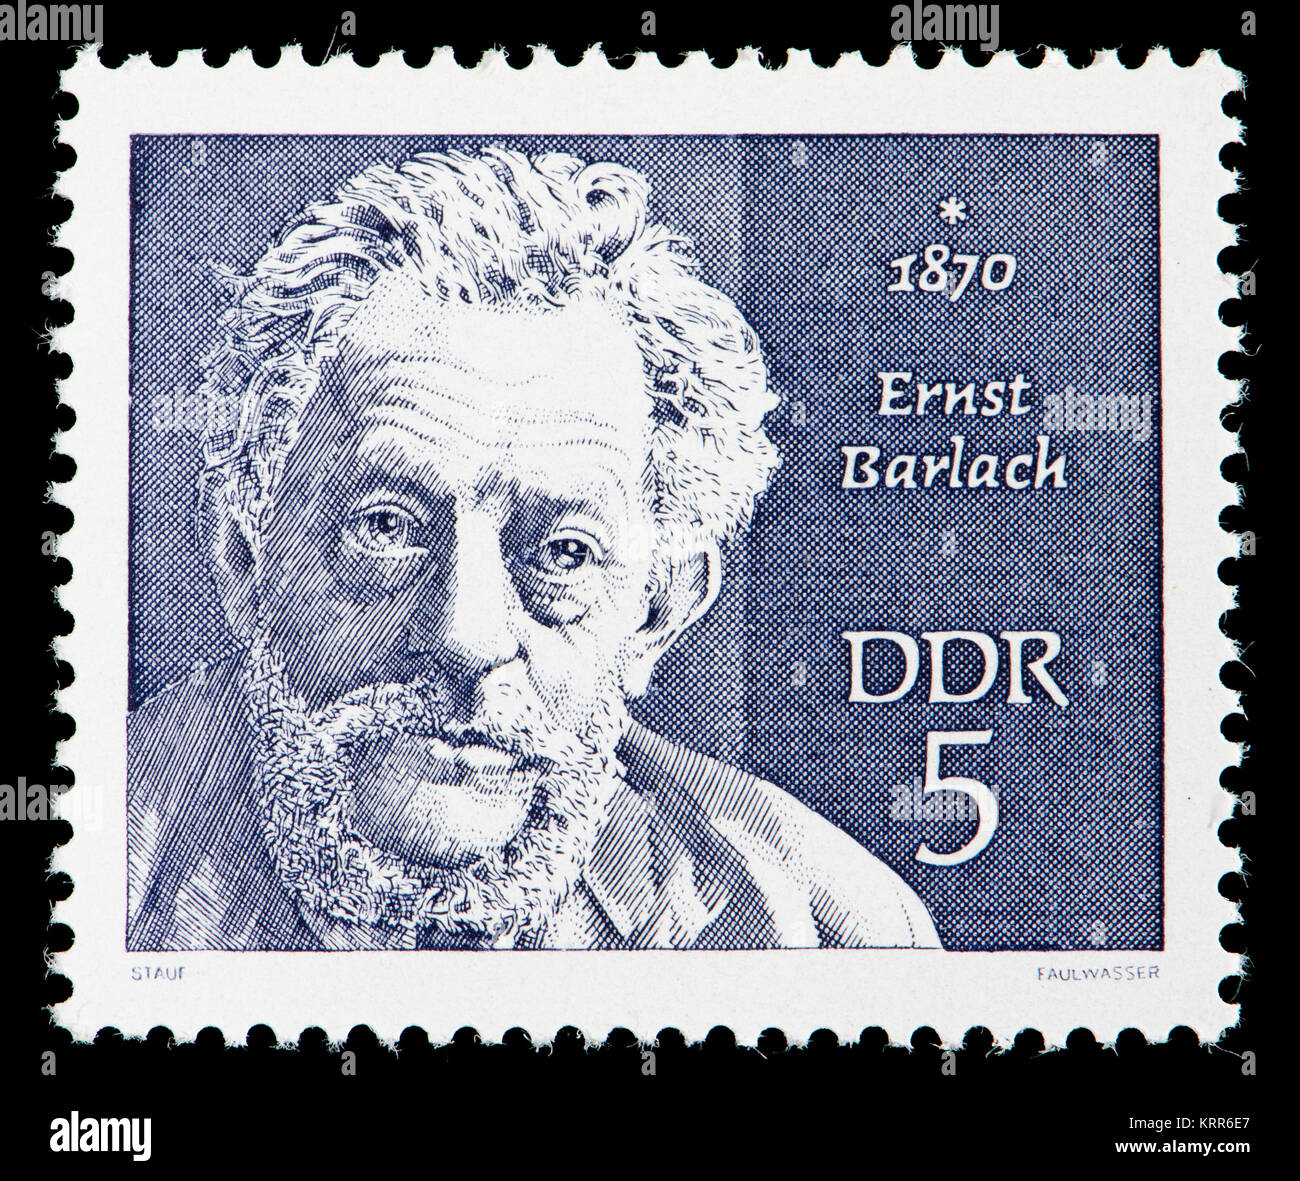 L'allemand de l'Est (DDR) timbre-poste (1970) : Ernst Barlach (1870 - 1938) sculpteur expressionniste allemand, graveur et écrivain Banque D'Images